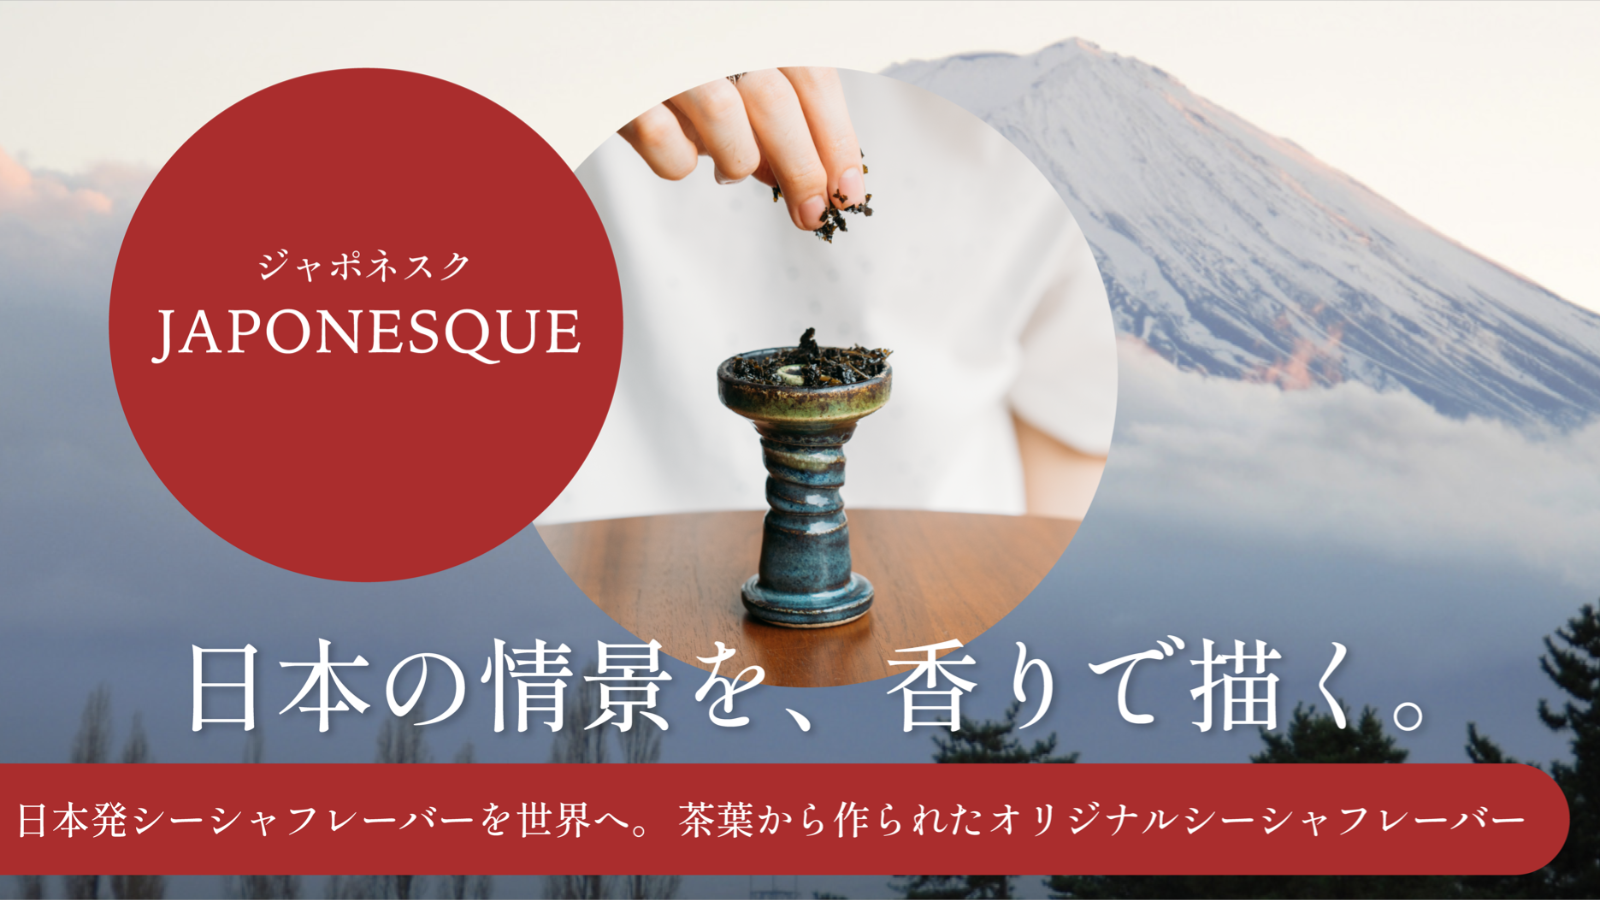 茶葉で作ったノンニコチンシーシャフレーバー Japonesque シリーズの先行販売が開始 Estark株式会社のプレスリリース